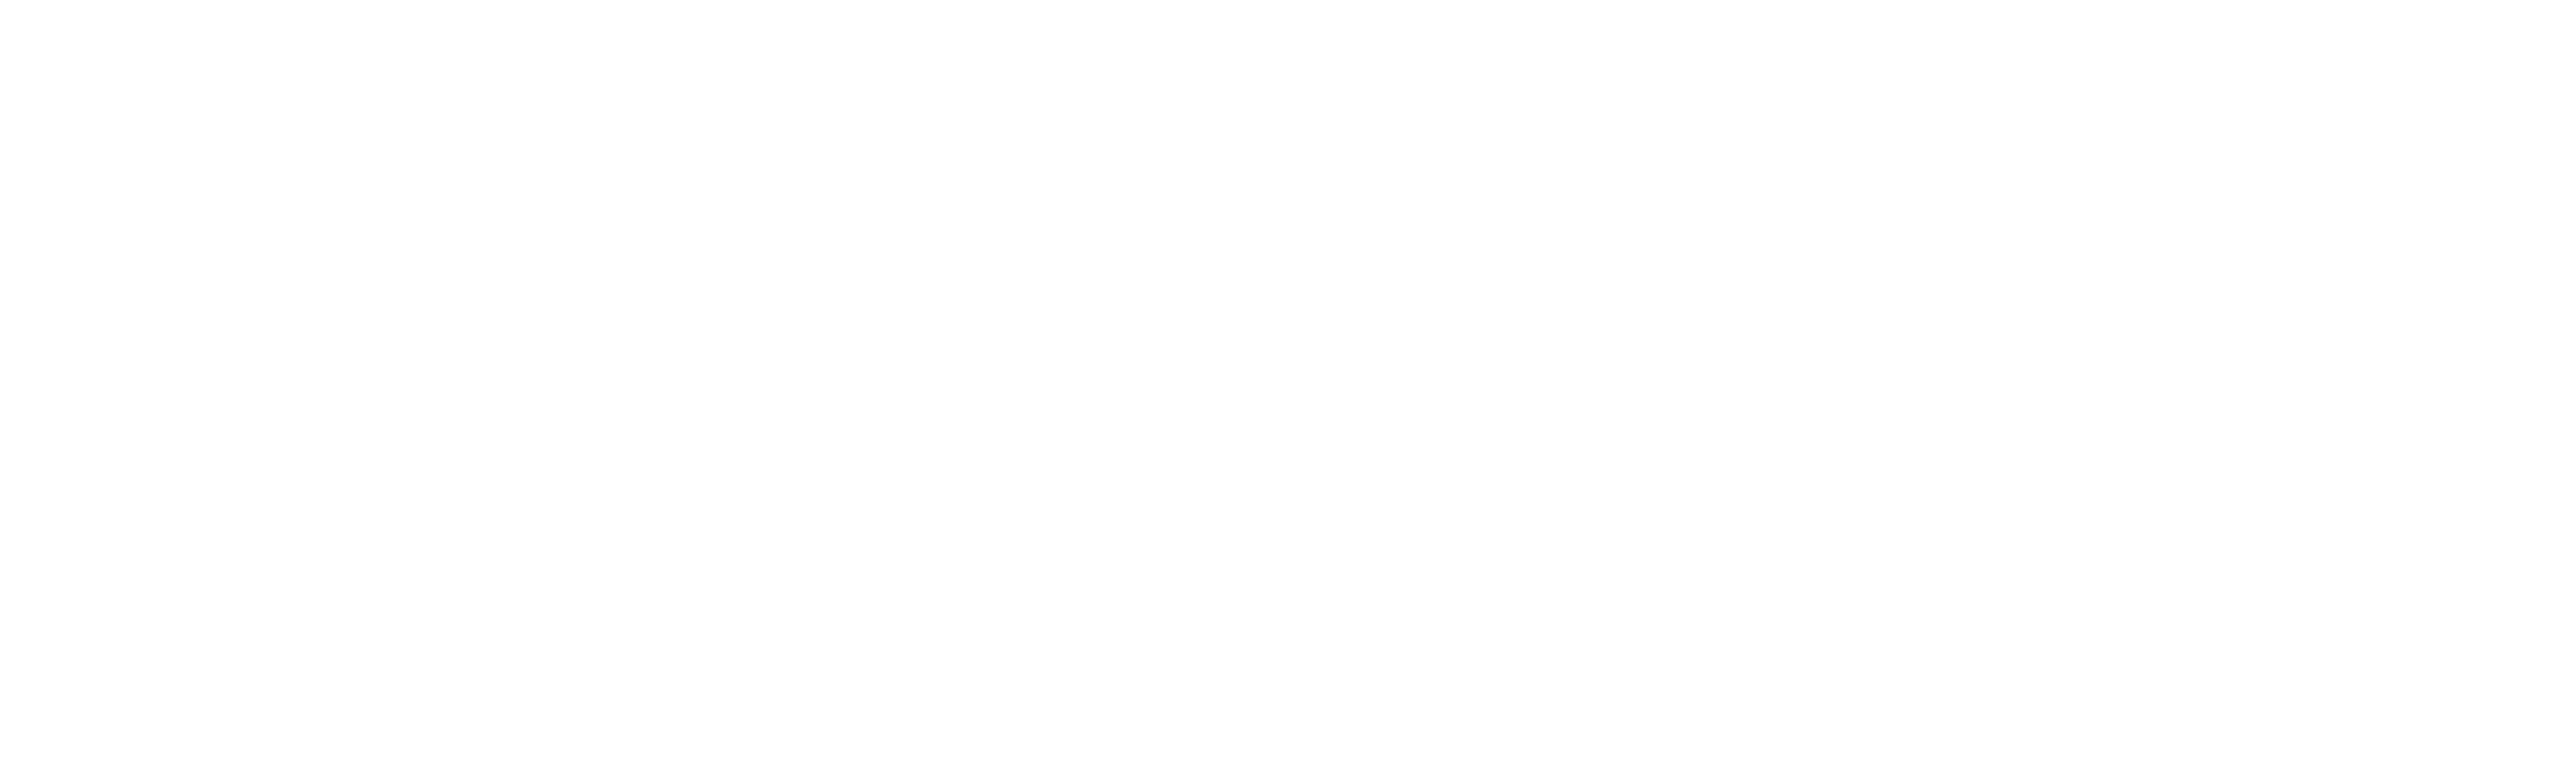 PayFast Logo White